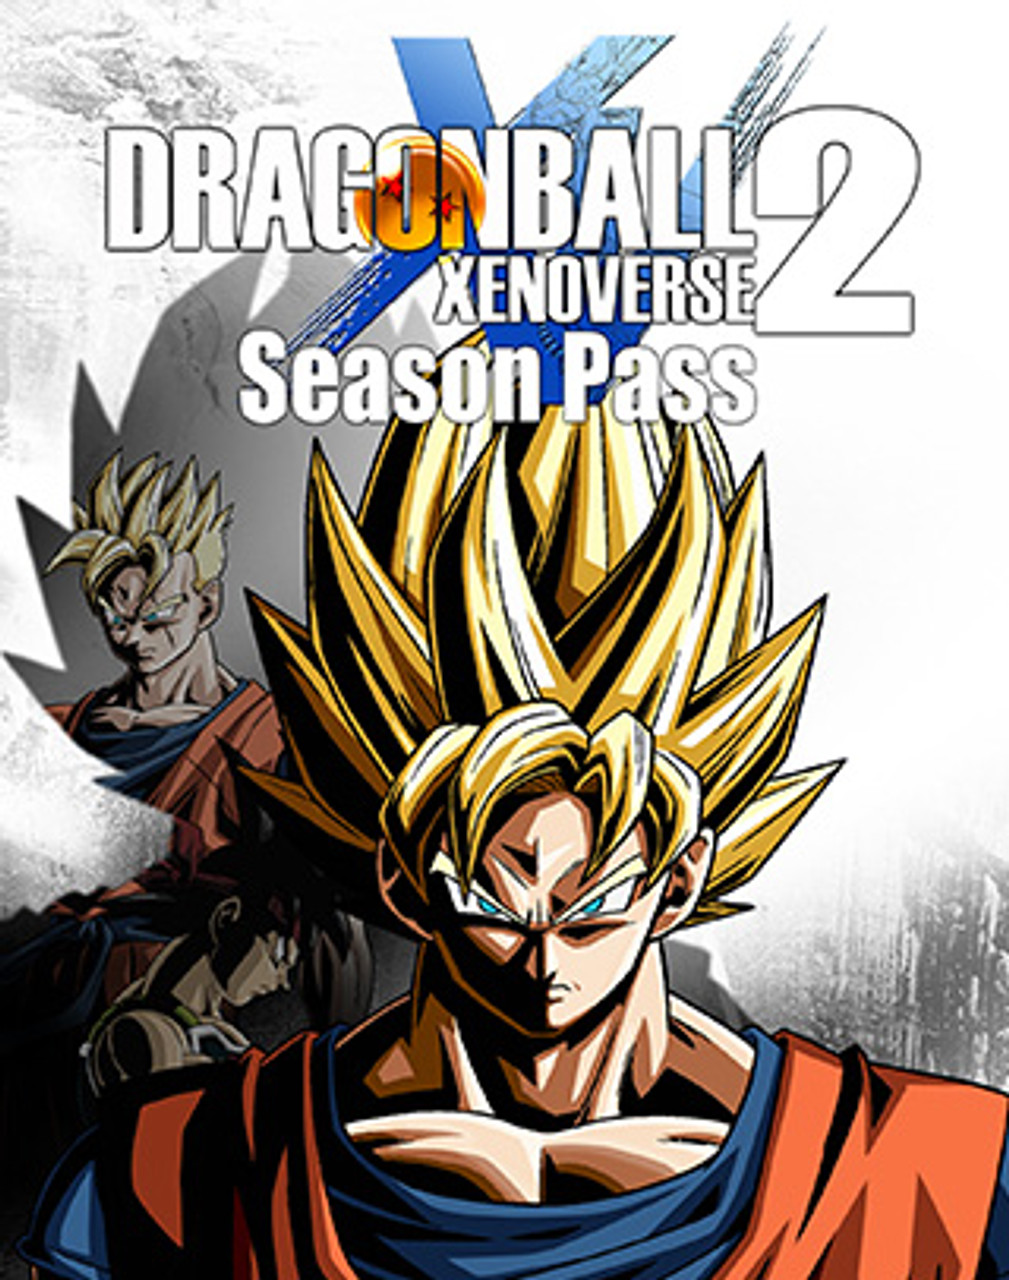 Dragon Ball Xenoverse 2, PC